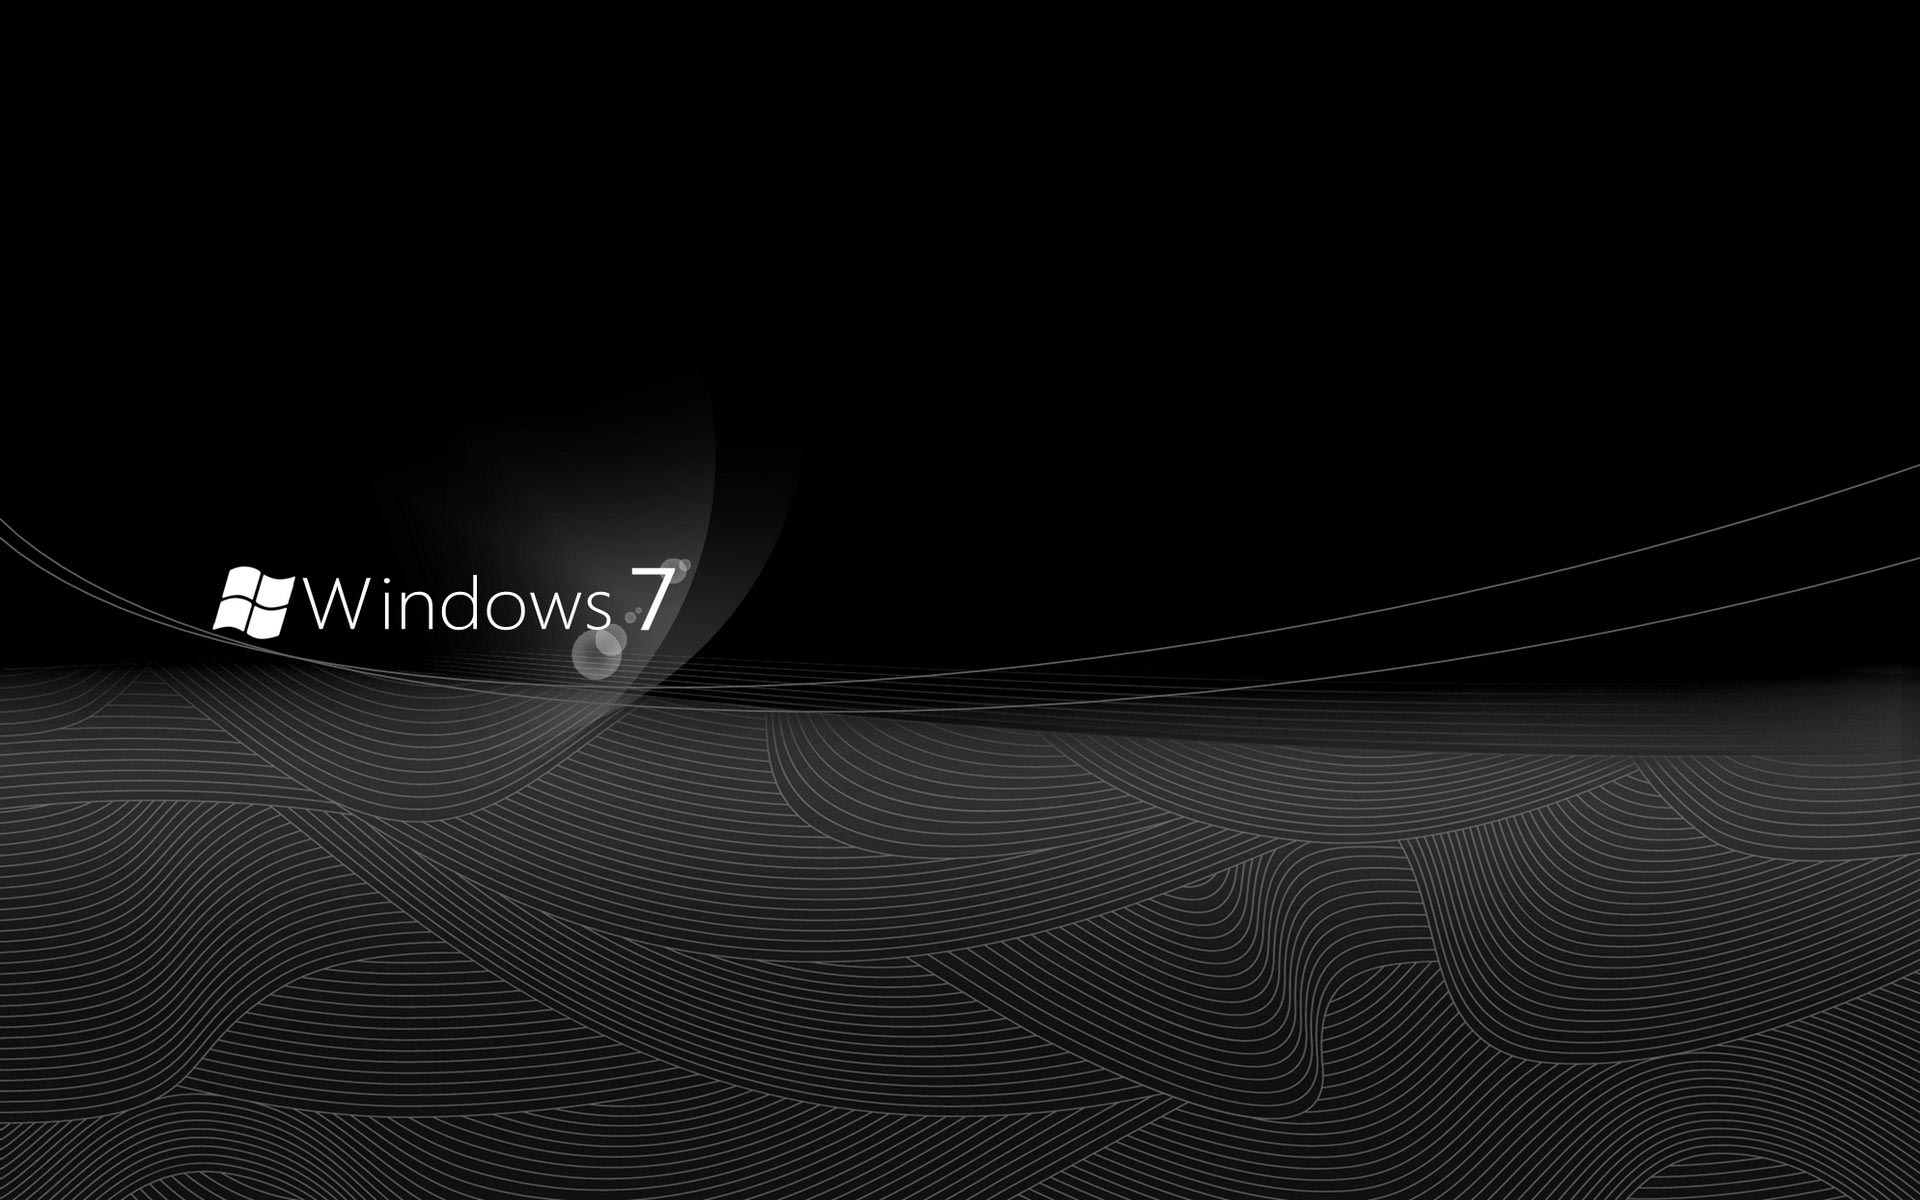 Hình nền màu đen của Windows 7 đích thực là một lựa chọn đầy tinh tế và đặc biệt để trang trí cho màn hình desktop. Không chỉ đẹp mắt, màu sắc này còn mang đến sự trang nhã, thẩm mỹ cho máy tính của bạn. Hãy thưởng thức hình ảnh để cảm nhận sự sang trọng và bí ẩn của màu sắc này nhé!